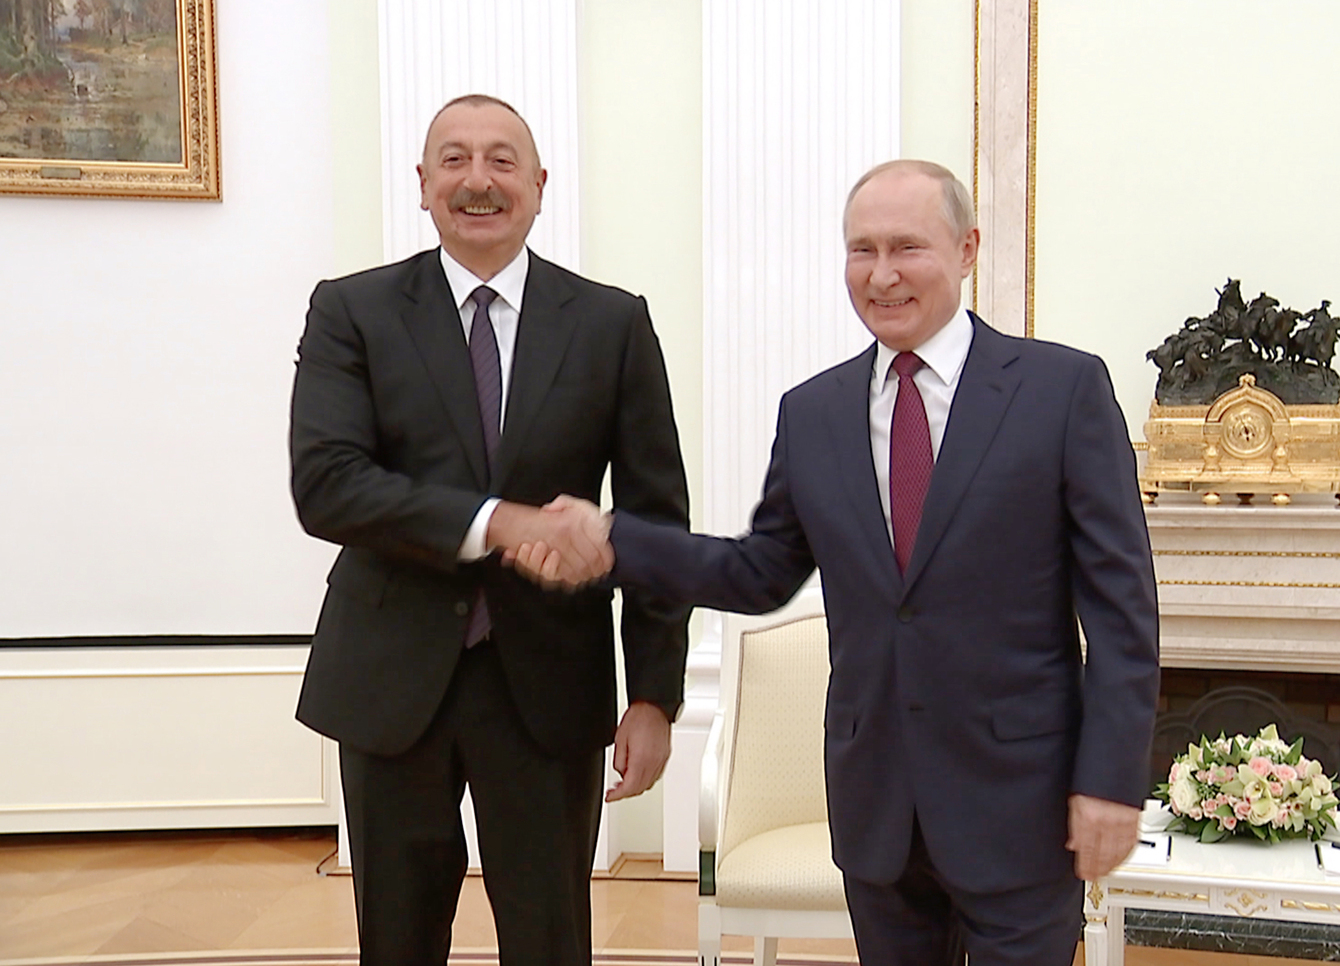 İlham Əliyev və Vladimir Putin arasında görüş başladı - FOTO/VİDEO